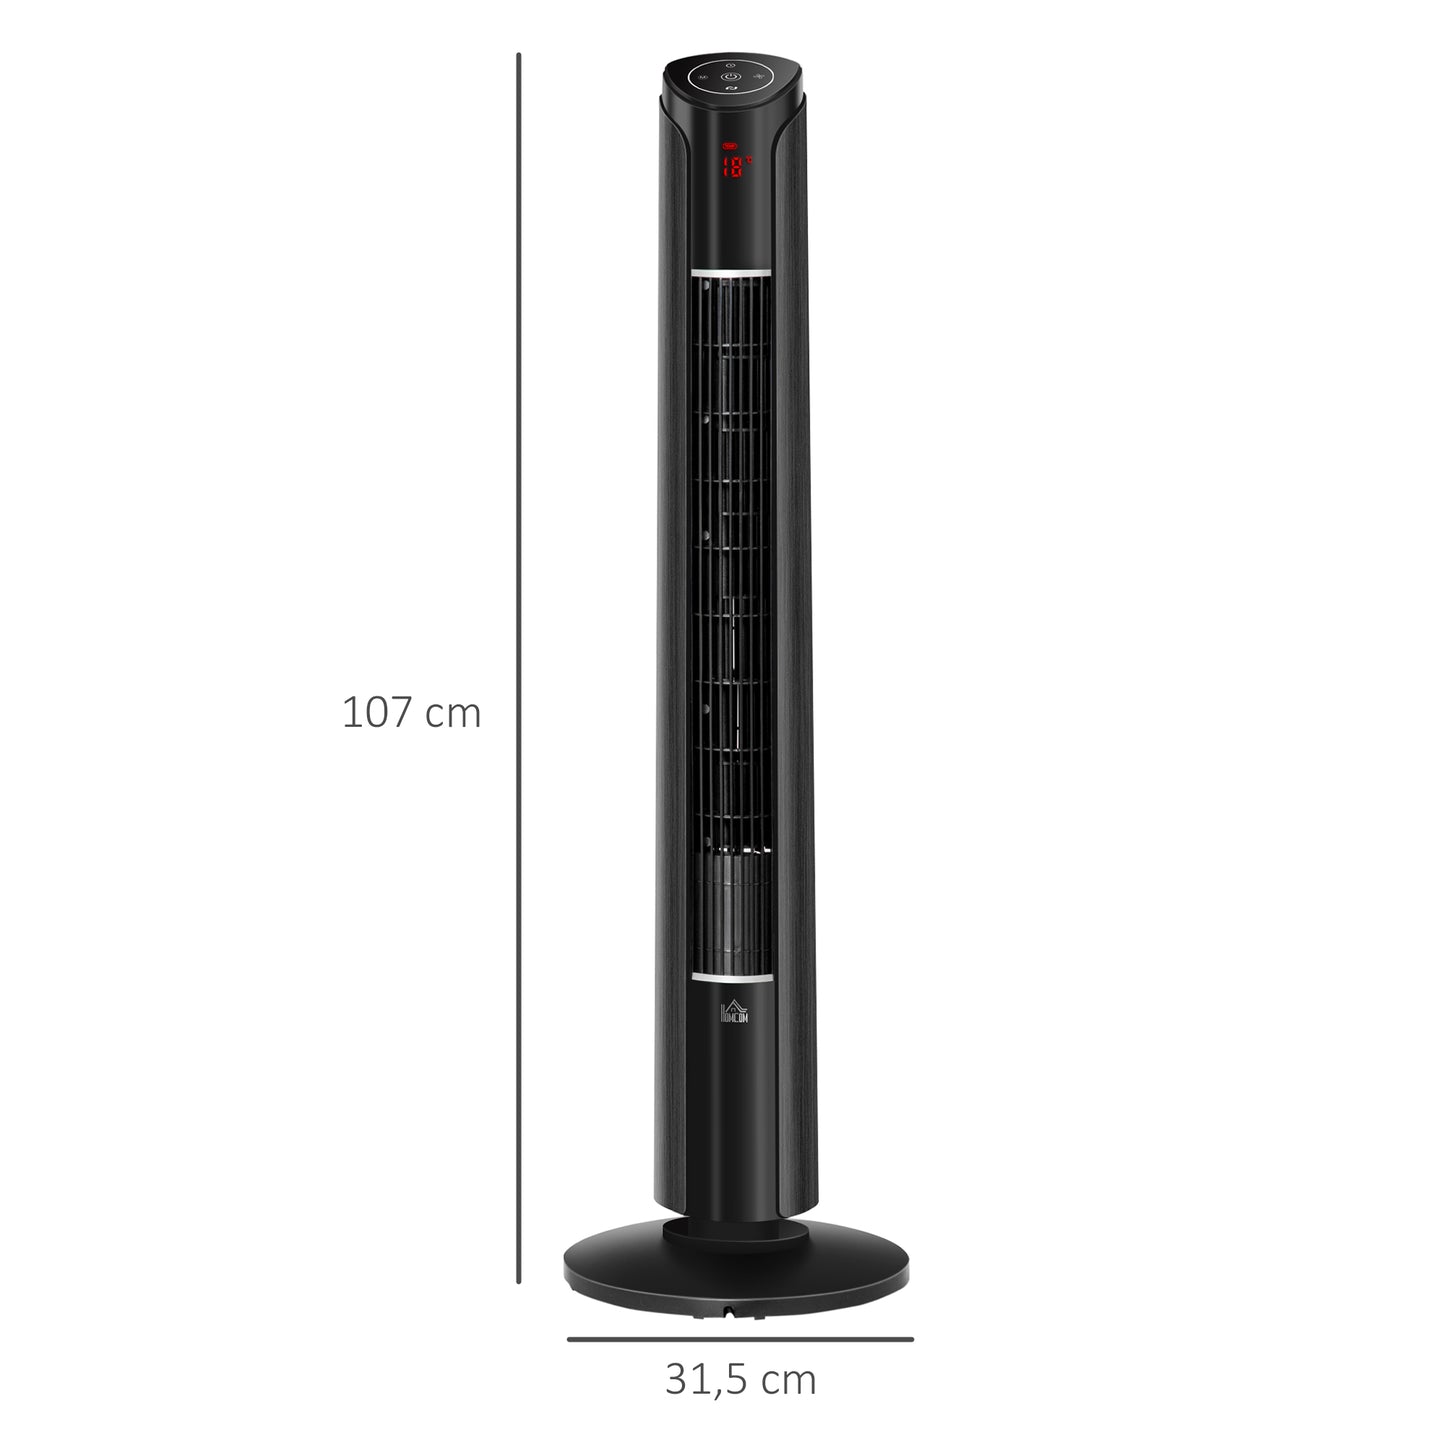 HOMCOM Ventilador de Torre Silencioso Bajo Consumo Altura 107 cm 45W con Mando a Distancia 3 Velocidades 4 Modos Oscilación de 70° Pantalla LED Táctil y Temporizador 12h Oficina Hogar Negro